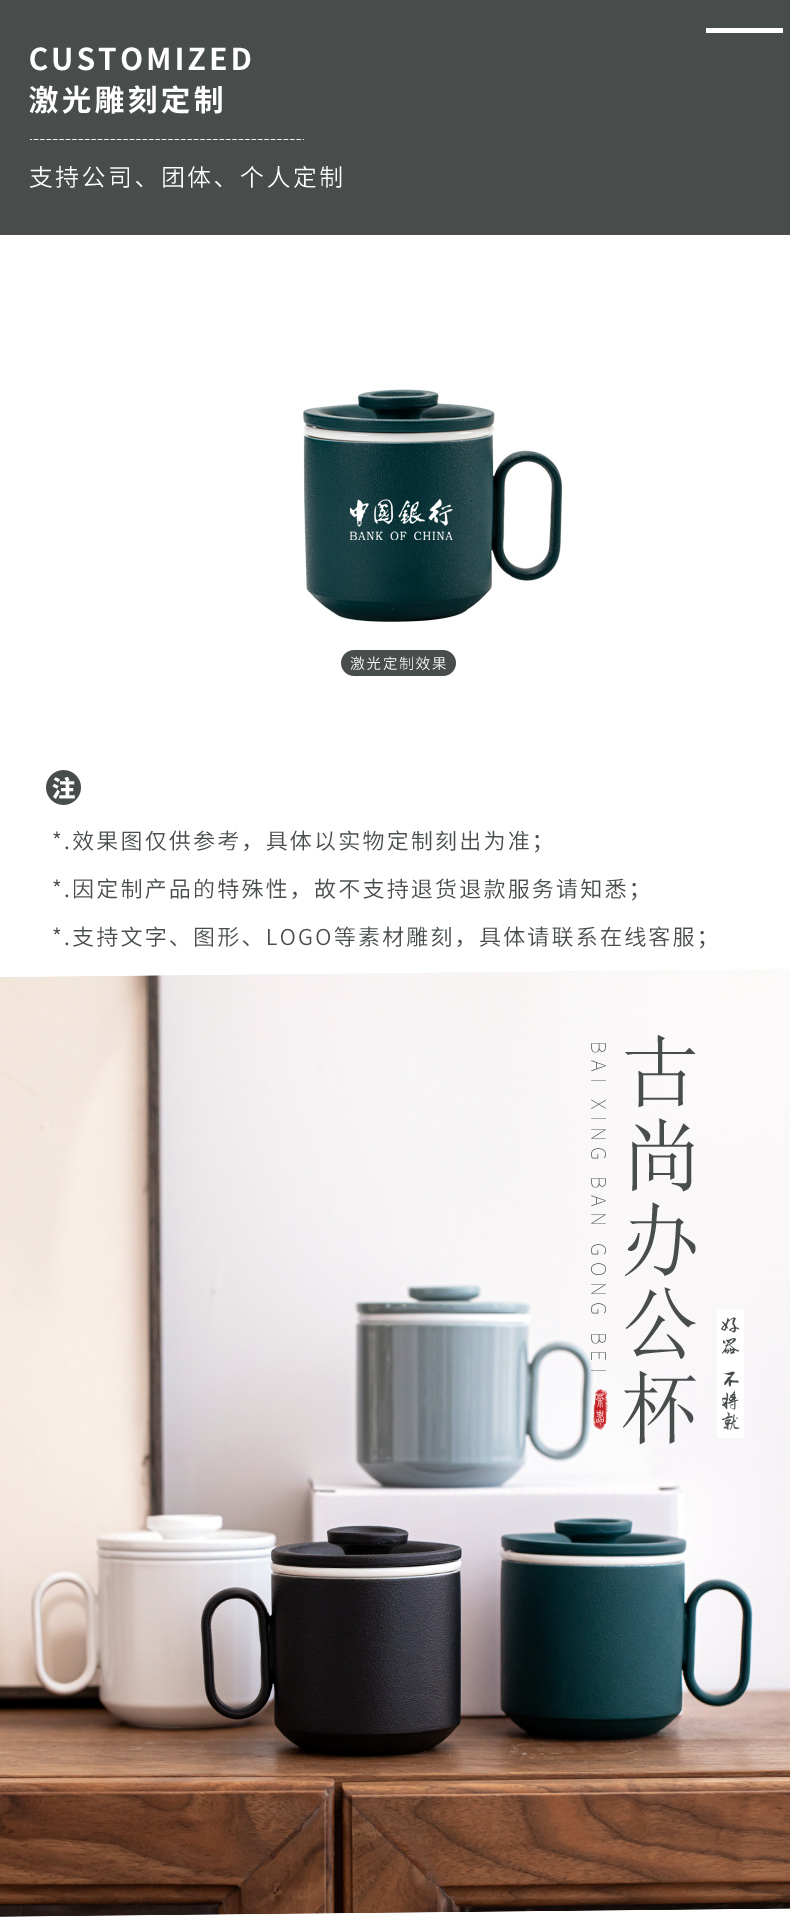 创意陶瓷马克杯 日式办公室泡茶杯批发 礼品茶杯定制logo